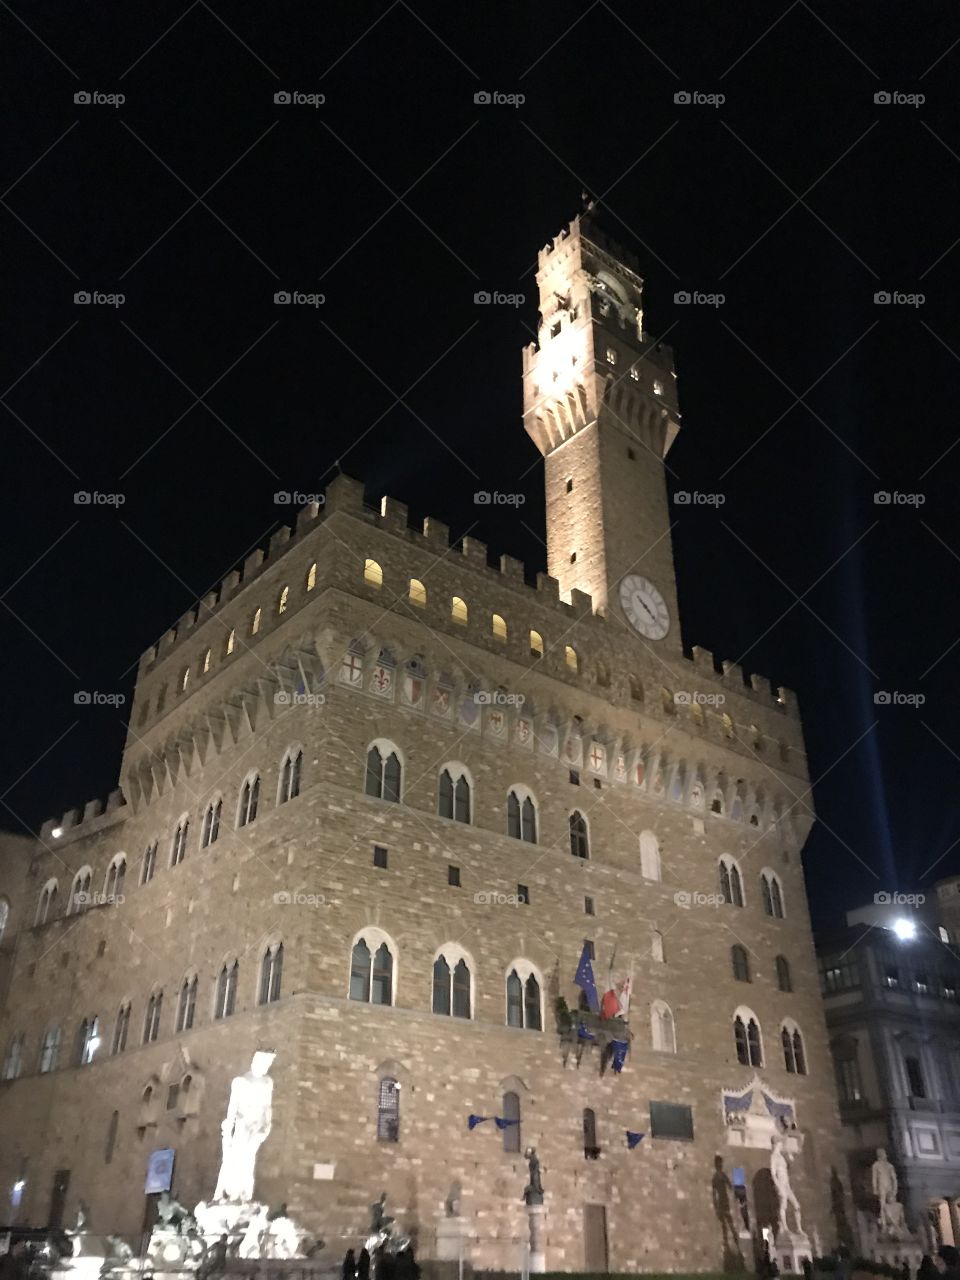 Palazzo Vecchio in piazza signoria at night.